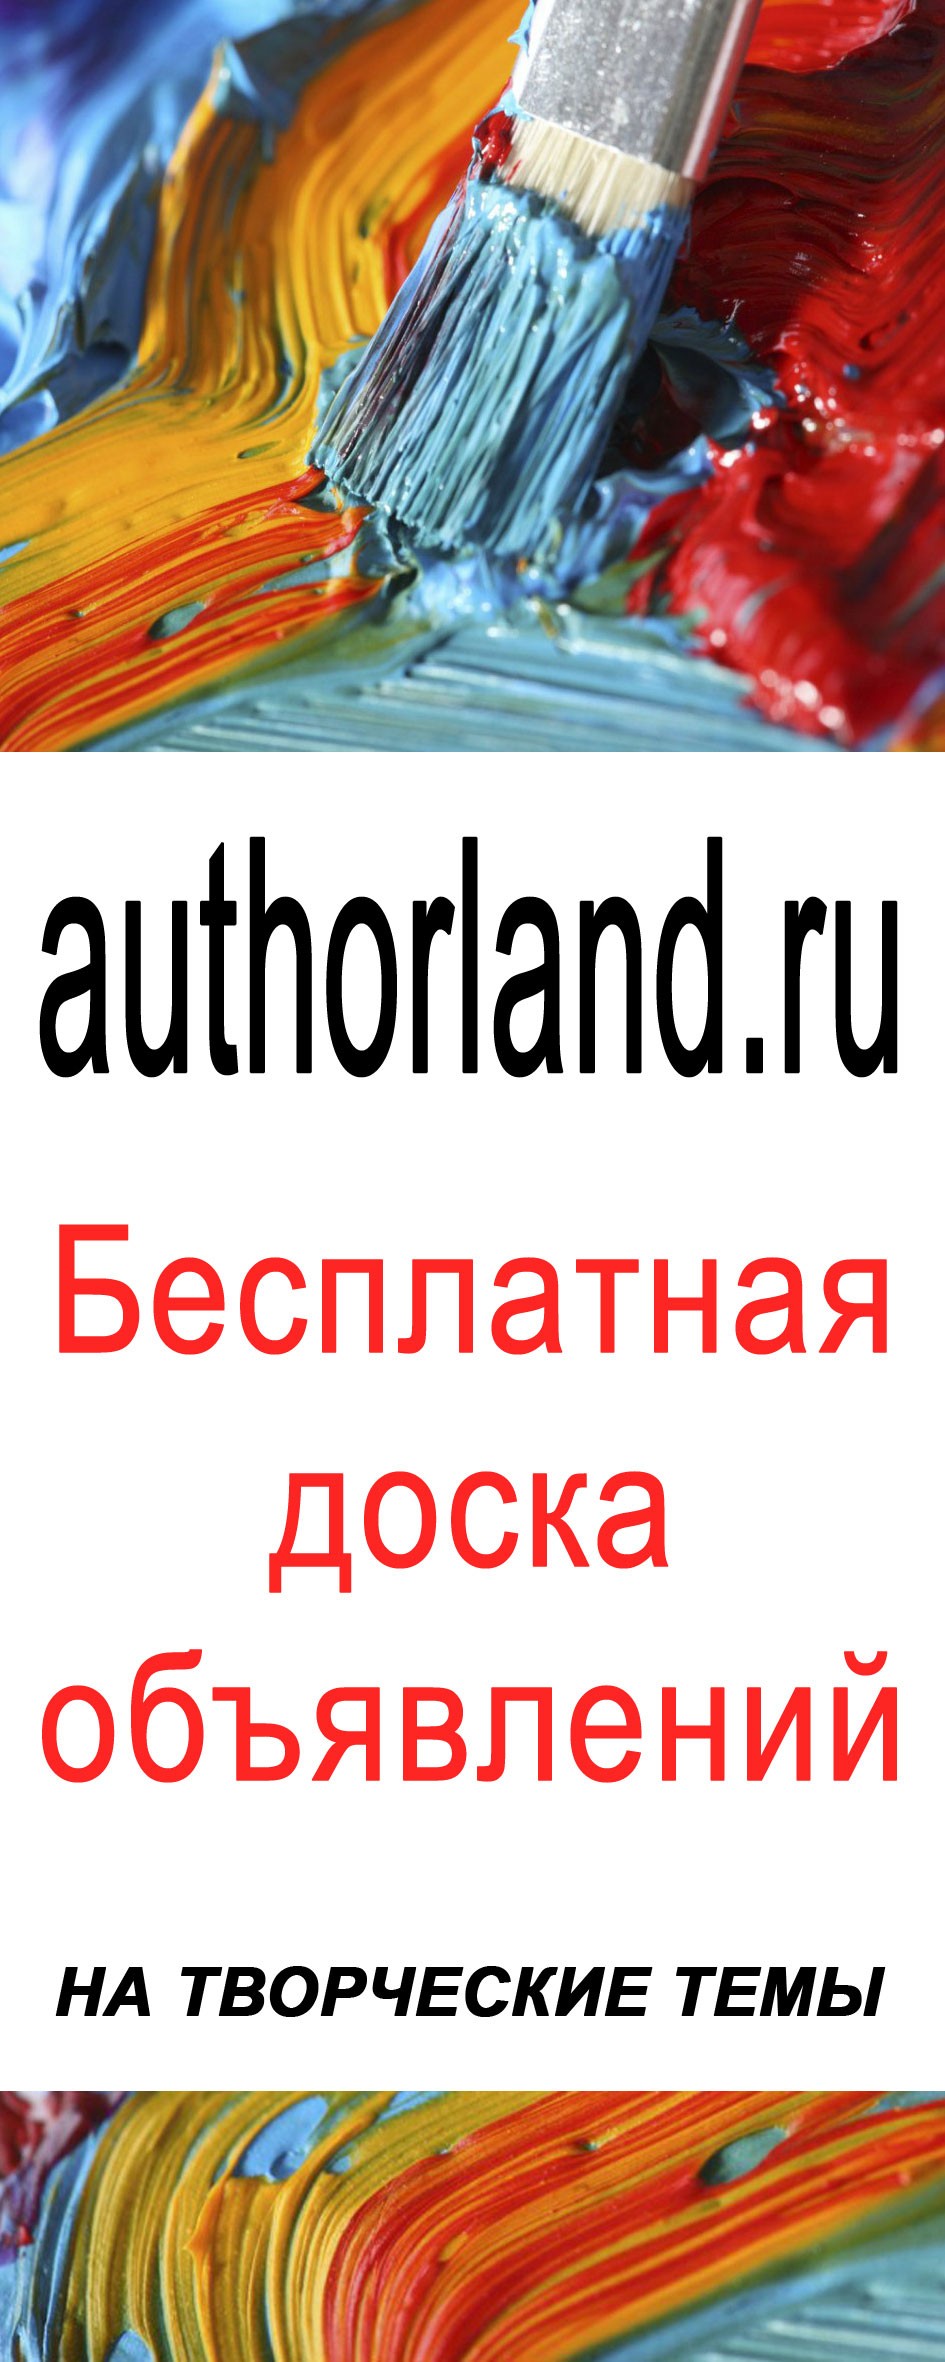 authorland.ru Бесплатные объявления на творческие темы